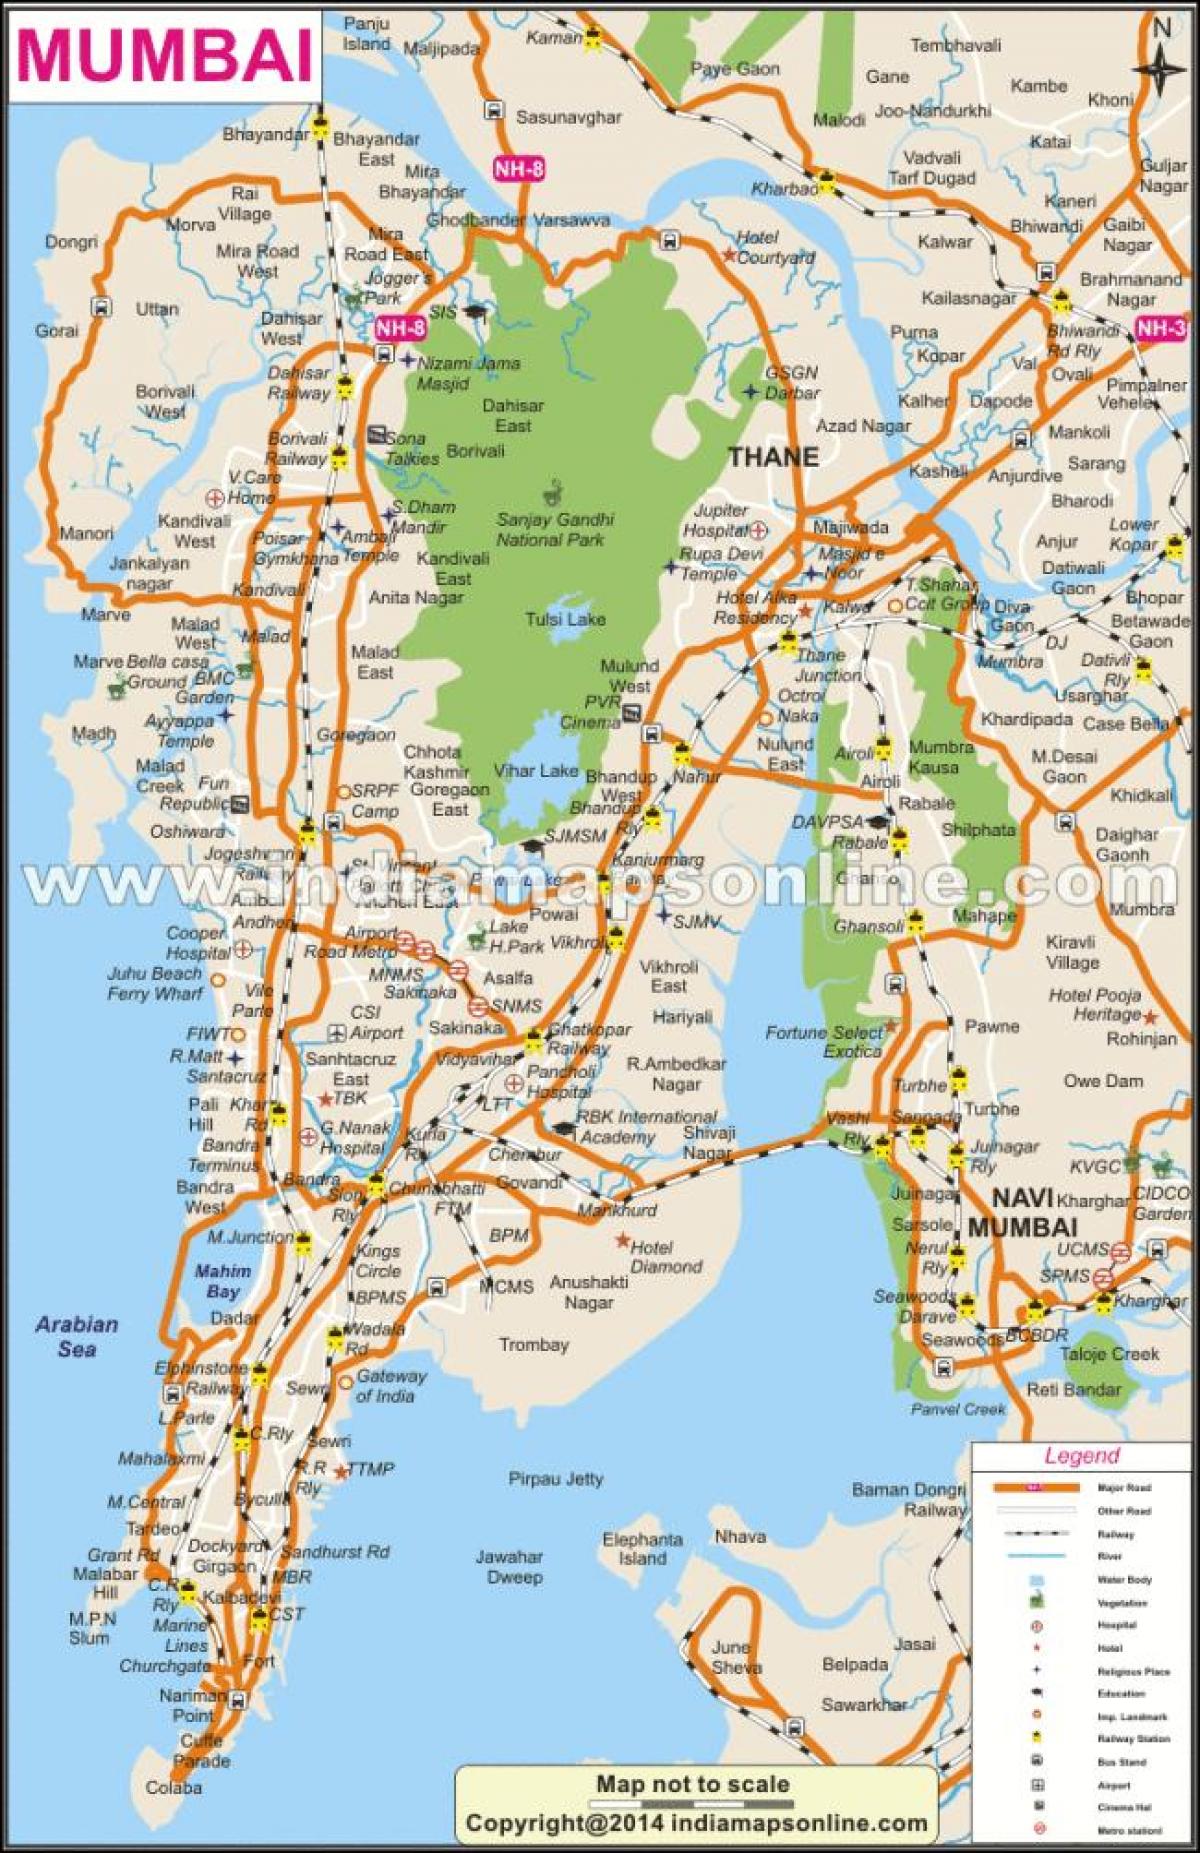 Mumbai op die kaart